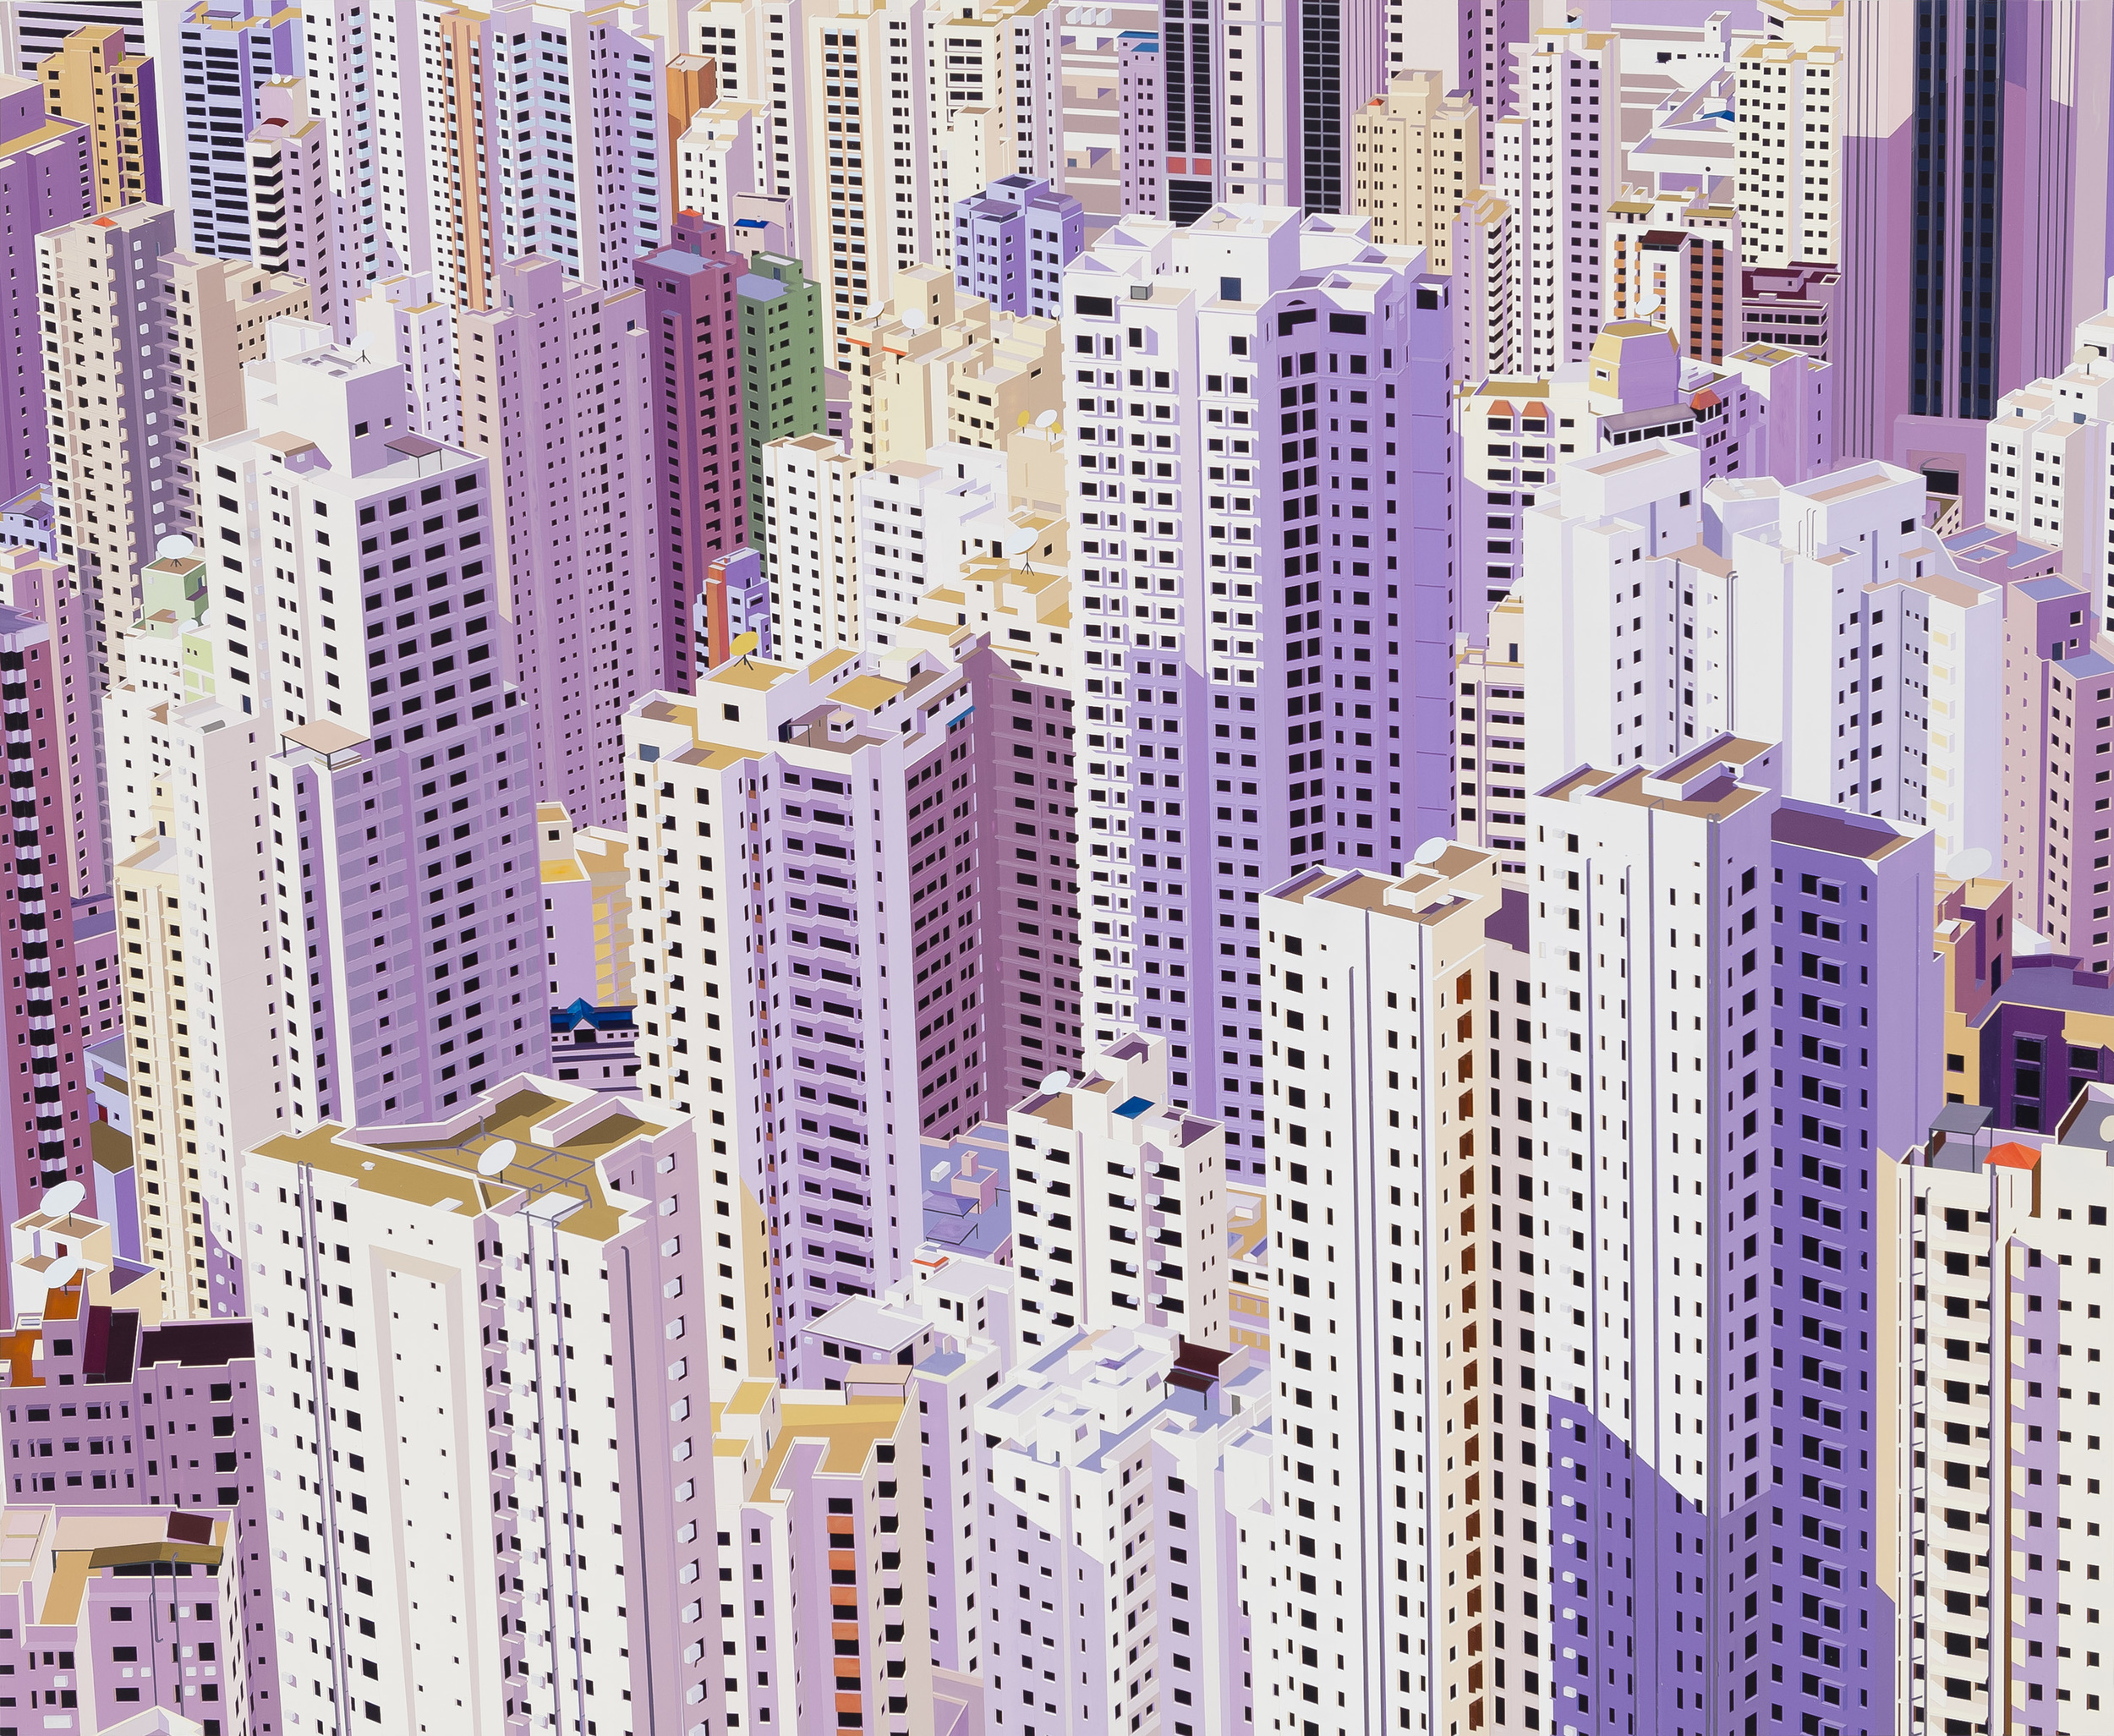 Hong Kong, 2013. Acrylic on Dibond, 60 x 70"